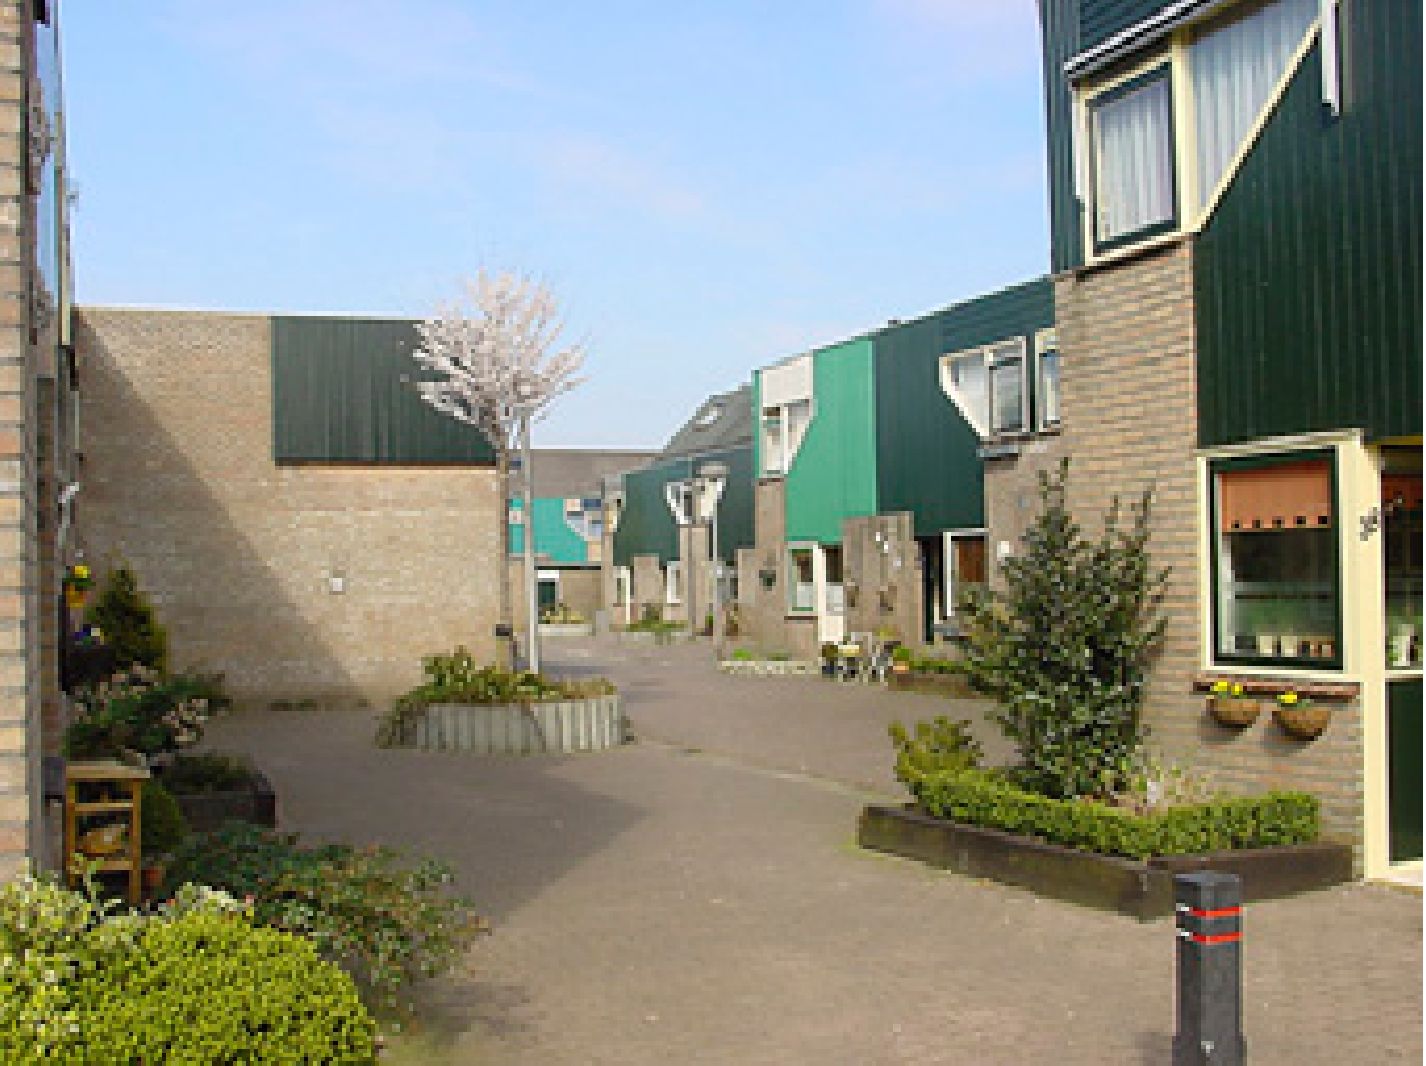 Welstandsnota gemeente aan de Mr. Haarmanstraat in Zevenhuizen. De materialisatie is overwegend steen in een rode tot gele kleur. Incidenteel is wit toegepast.